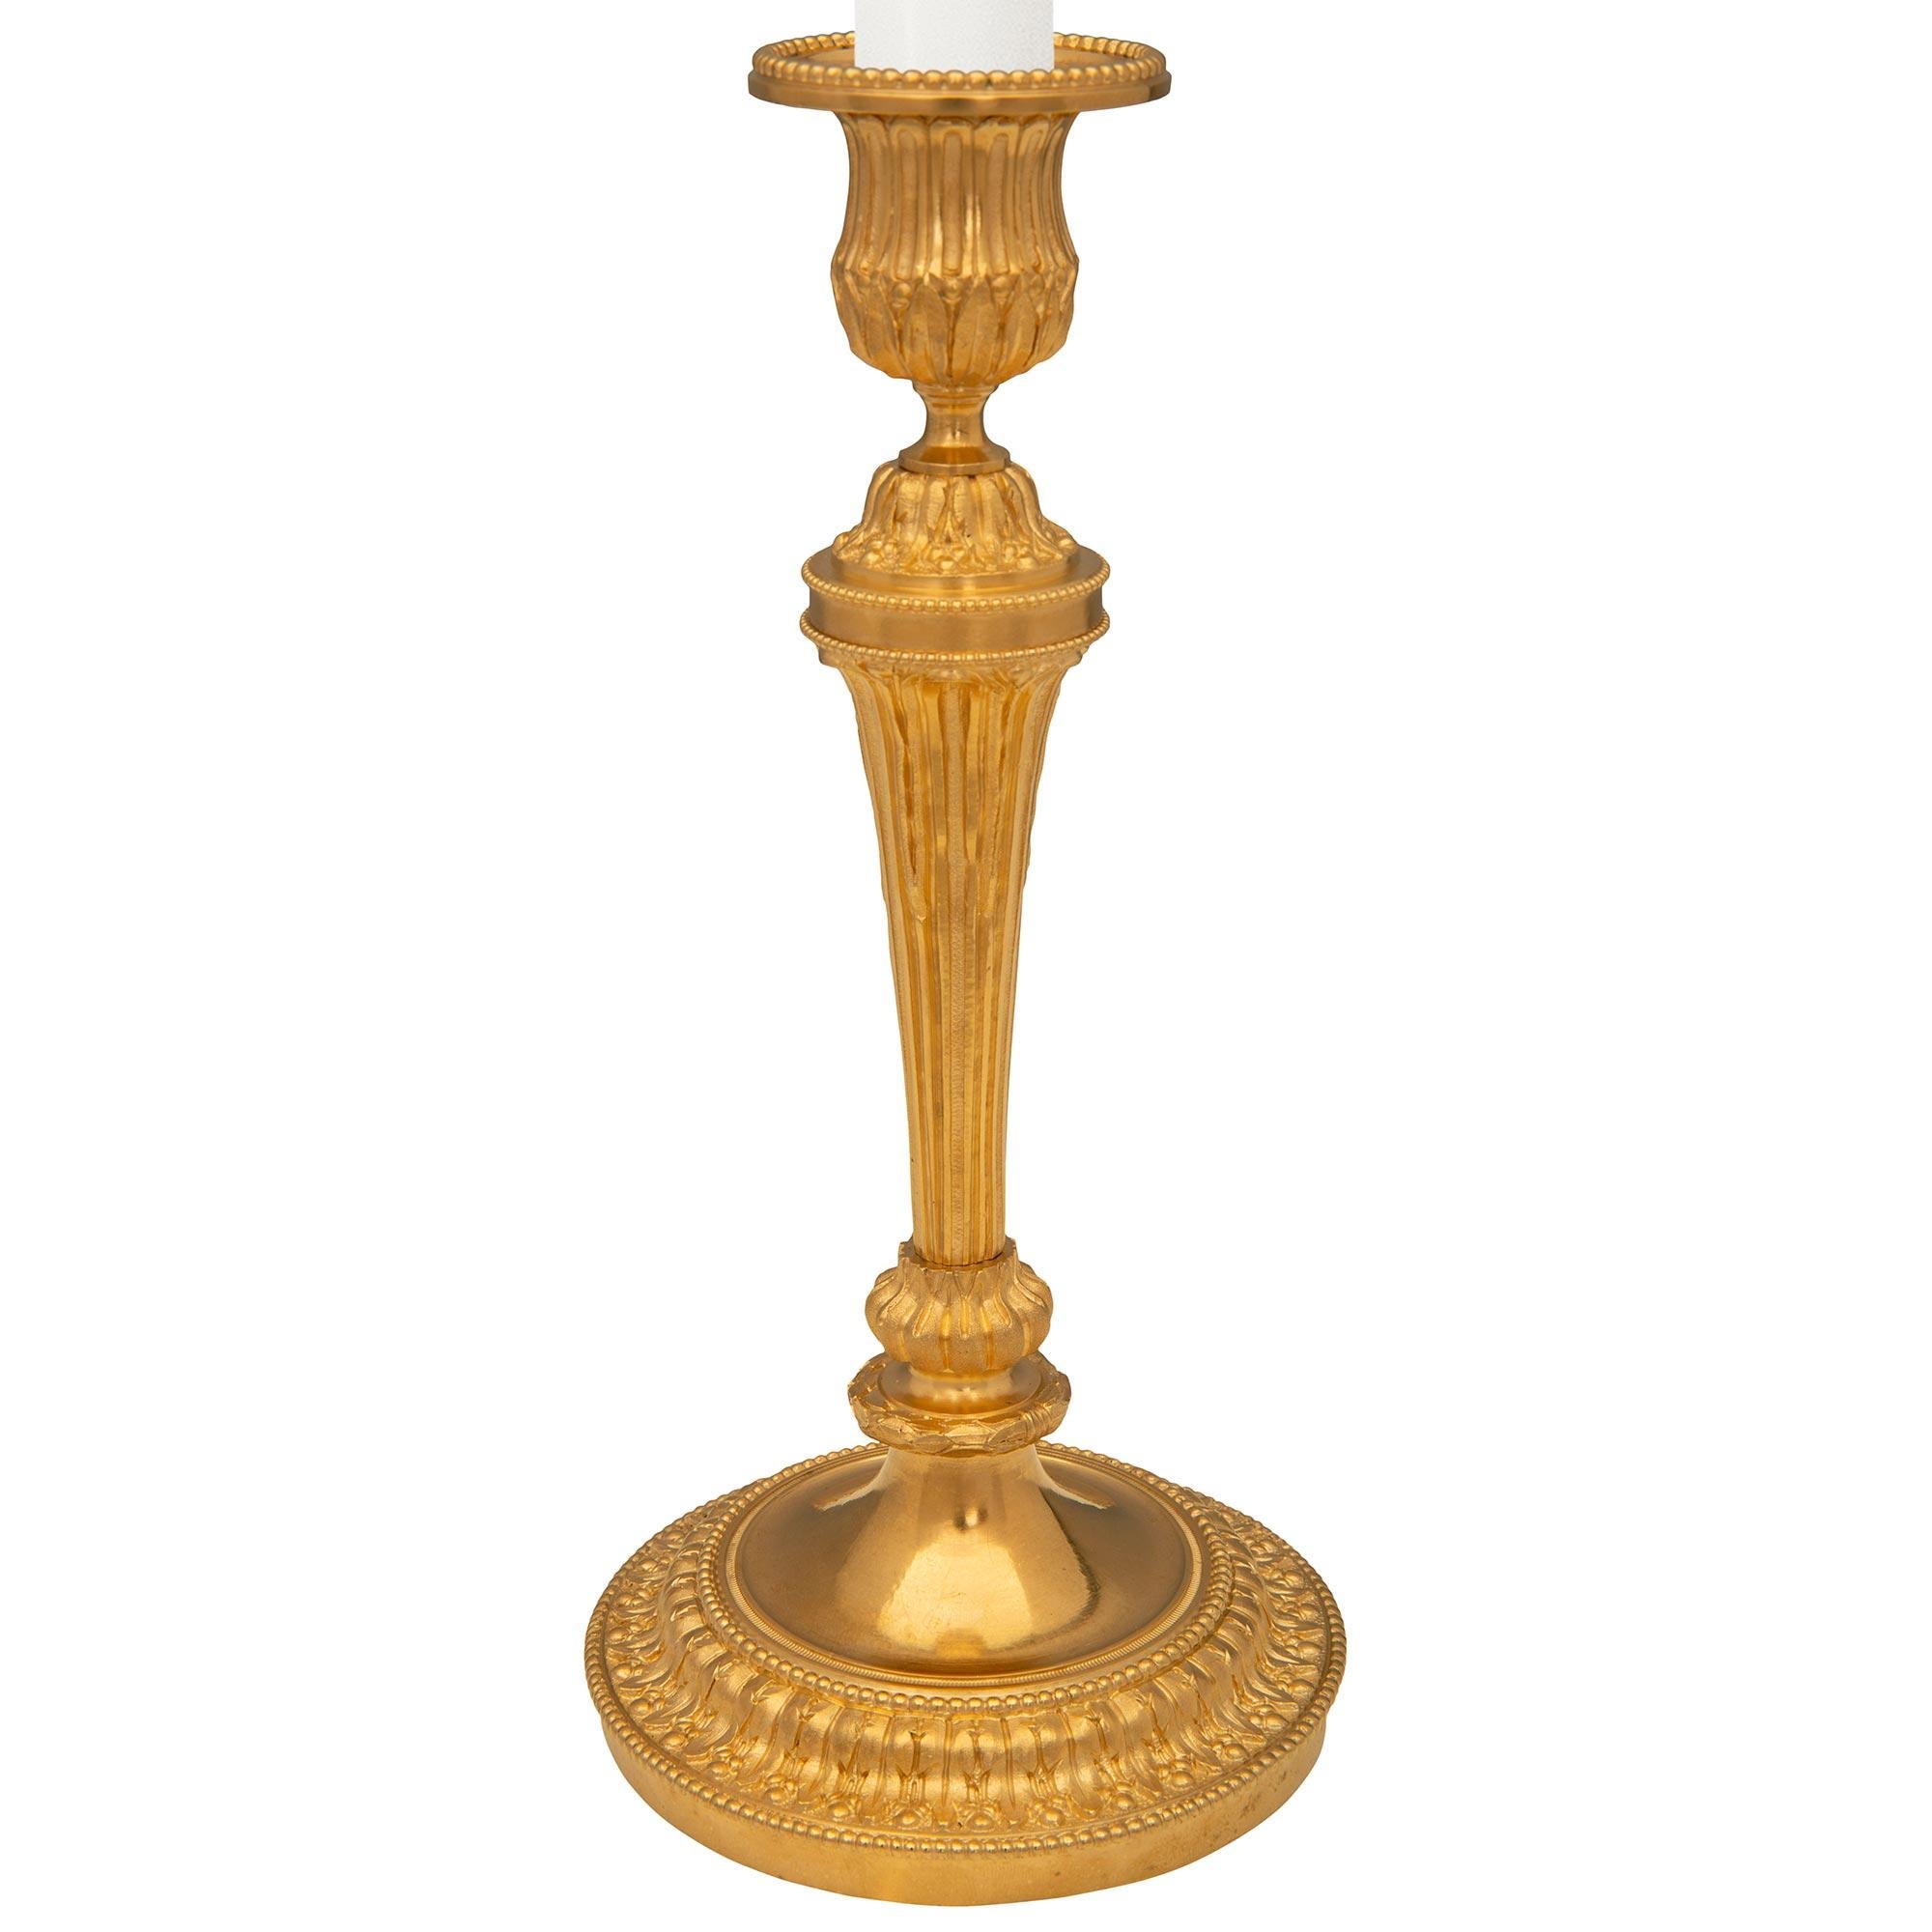 Une paire très élégante de chandeliers en bronze doré de style Louis XVI du XIXe siècle. Chaque chandelier est surélevé par une base circulaire avec une belle bande de feuillage et de perles richement ciselée et mouchetée. Au-dessus des supports de